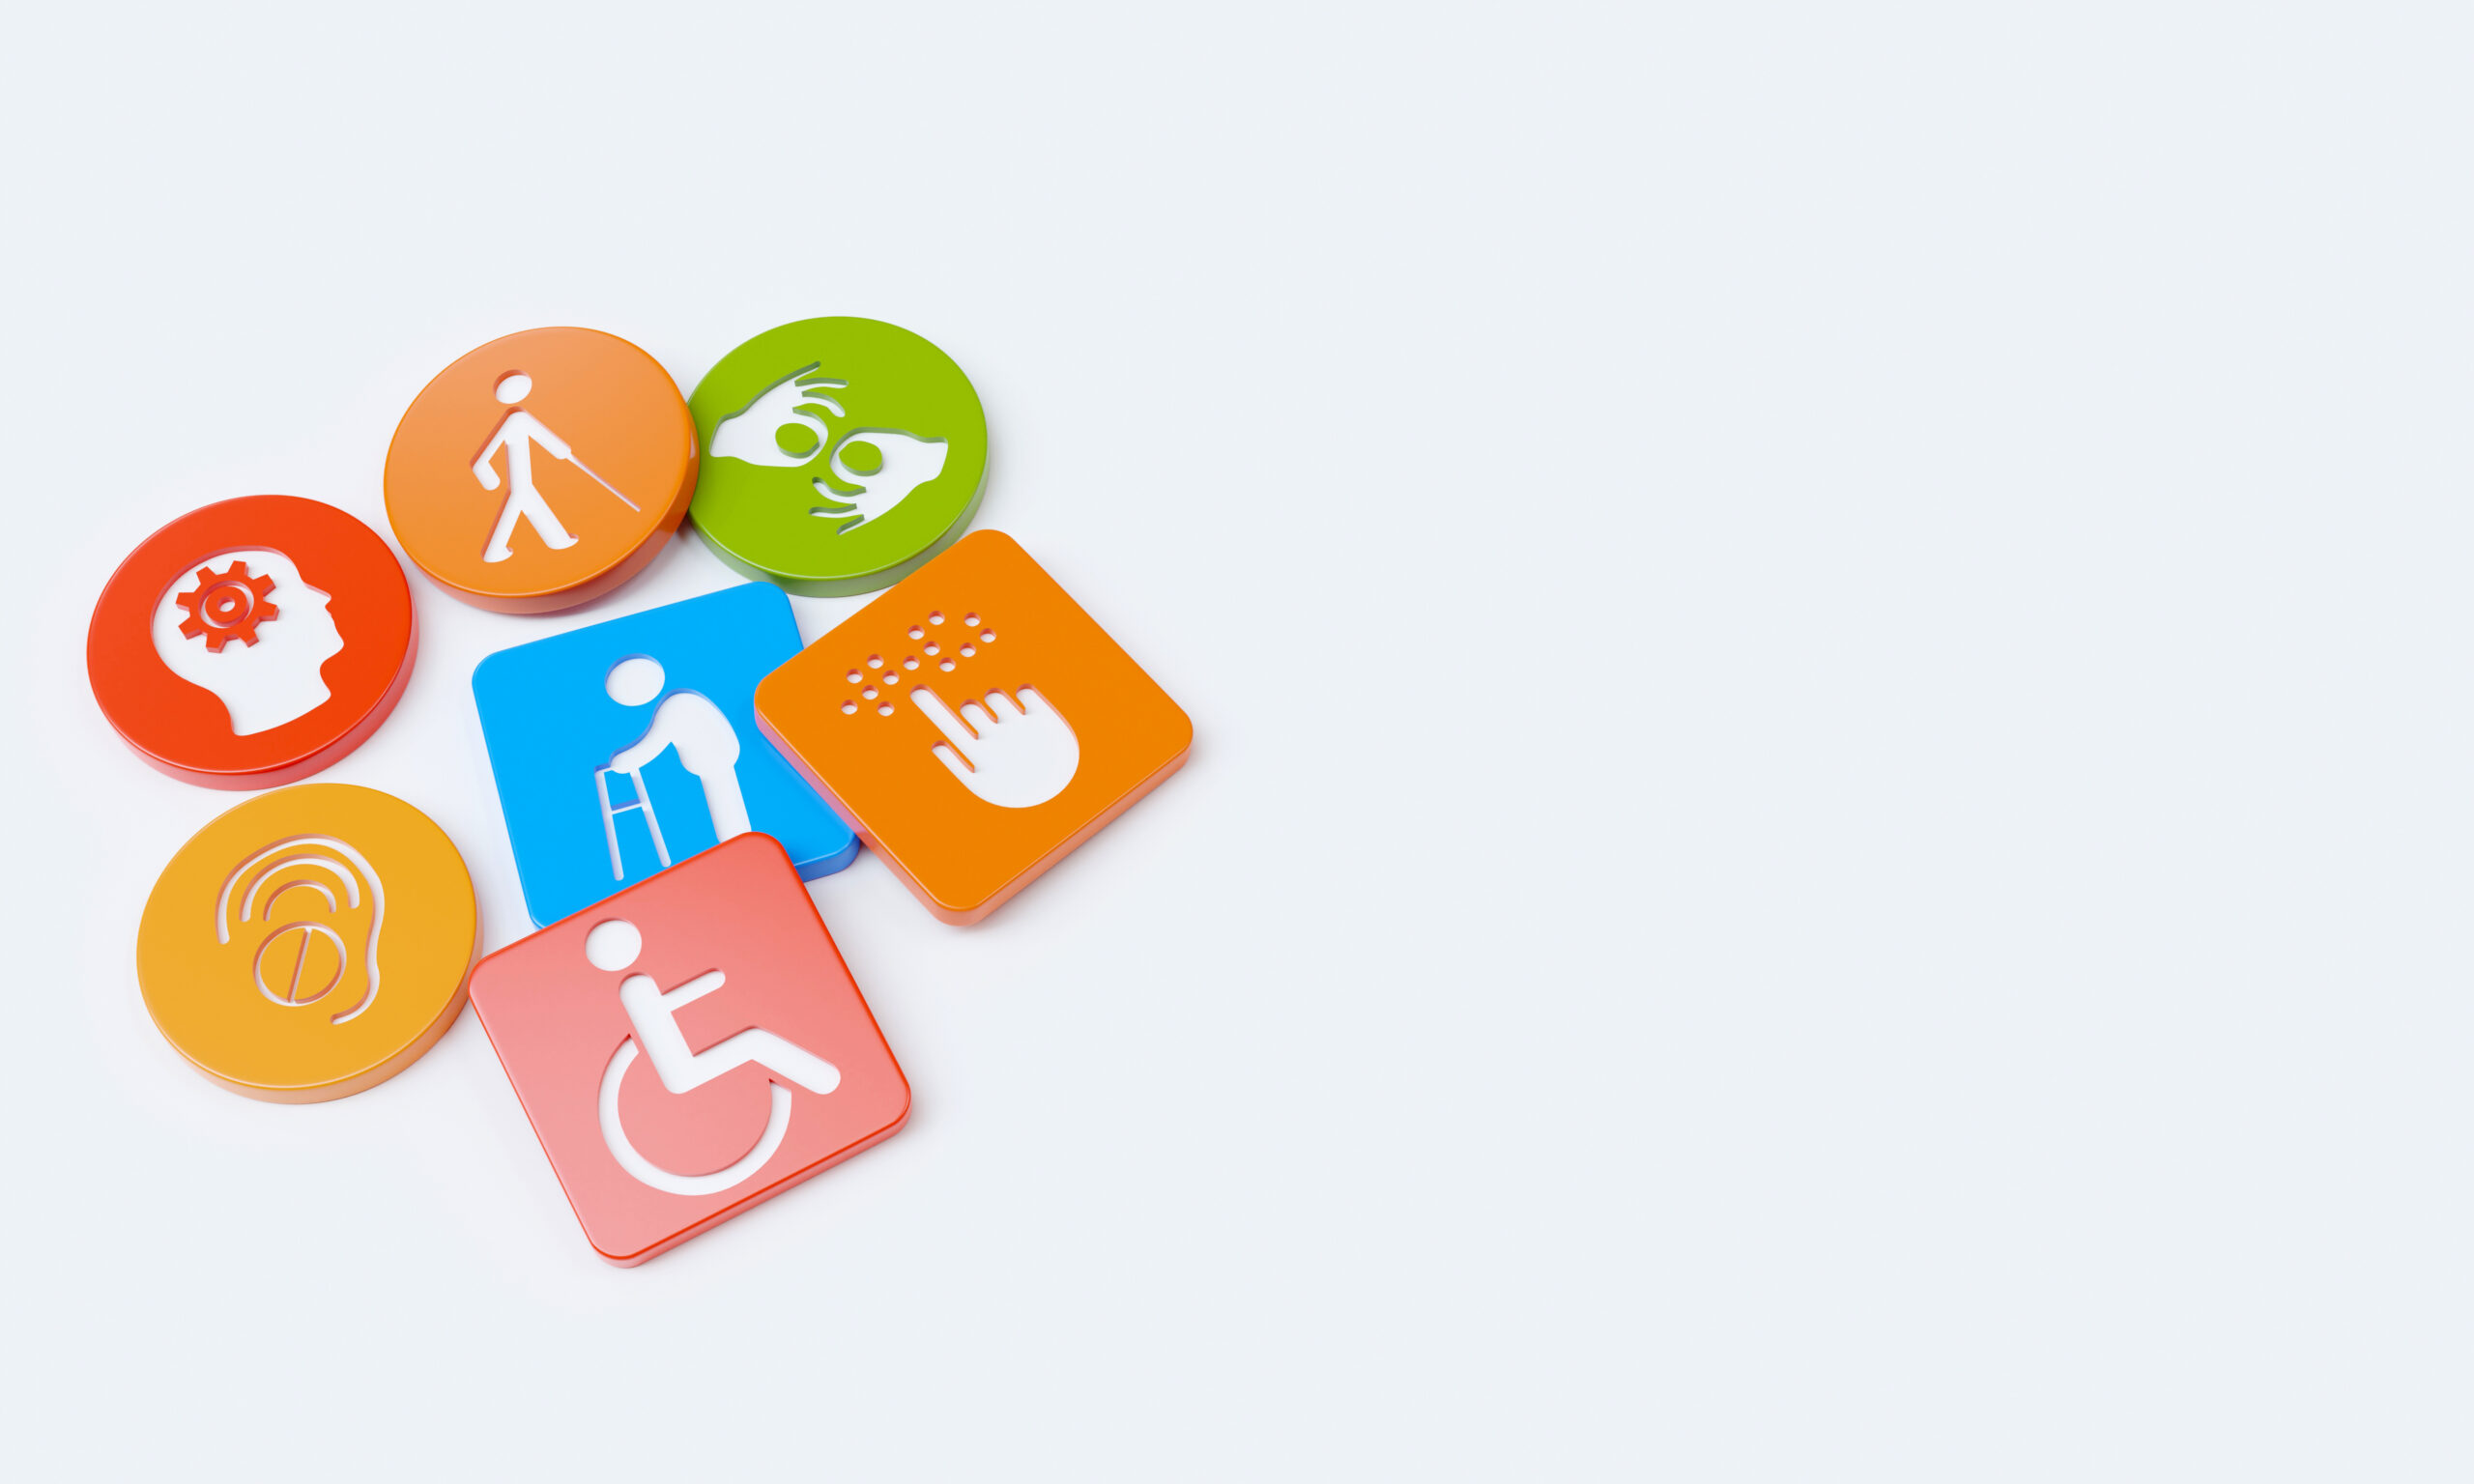 ikony symbolizujące różne niepełnosprawności na okrągłych i kwadratowych płytkach.